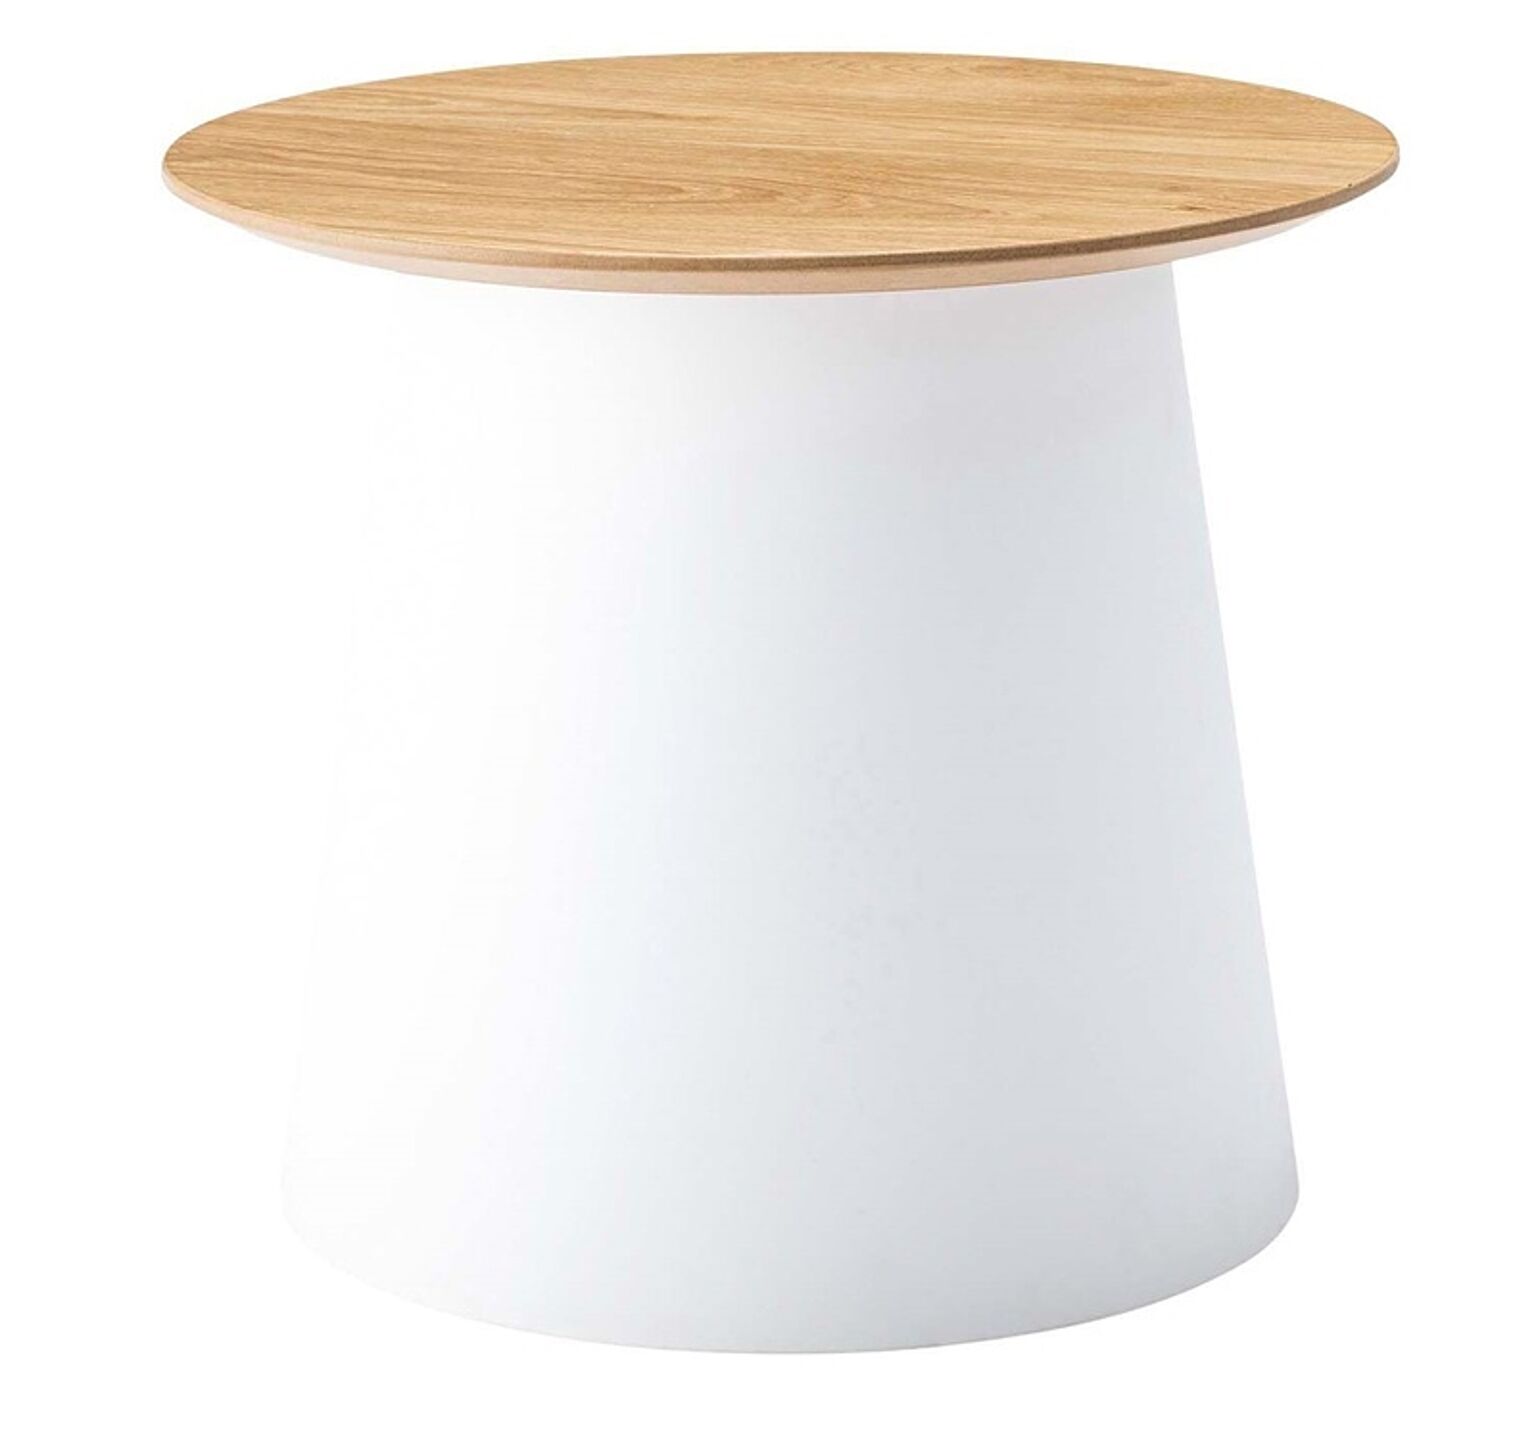 ラウンドテーブルS φ49×H42.5 ホワイト テーブル ラウンドテーブル 丸 ポリプロピレン サイドテーブル センターテーブル ナイトテーブル 室内 おしゃれ ホワイト グレー シンプル 異素材